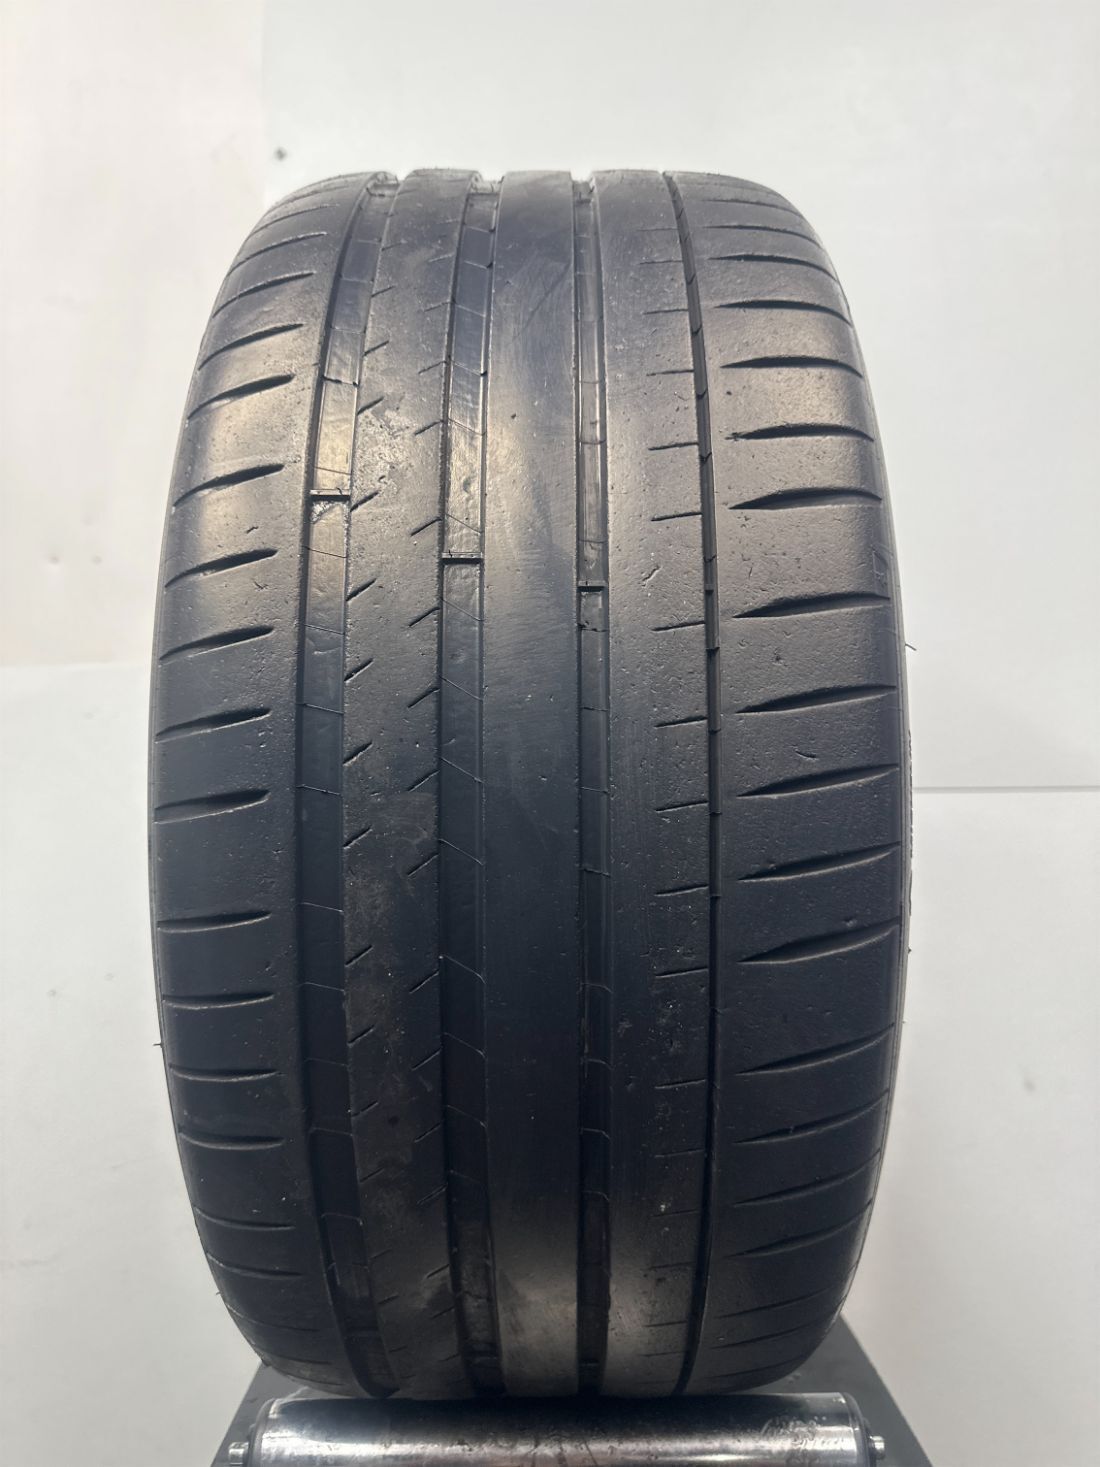 1 Michelin Pilot Sport 4S Used  Tire P265/40R20 2654020 265/40/20 6/32